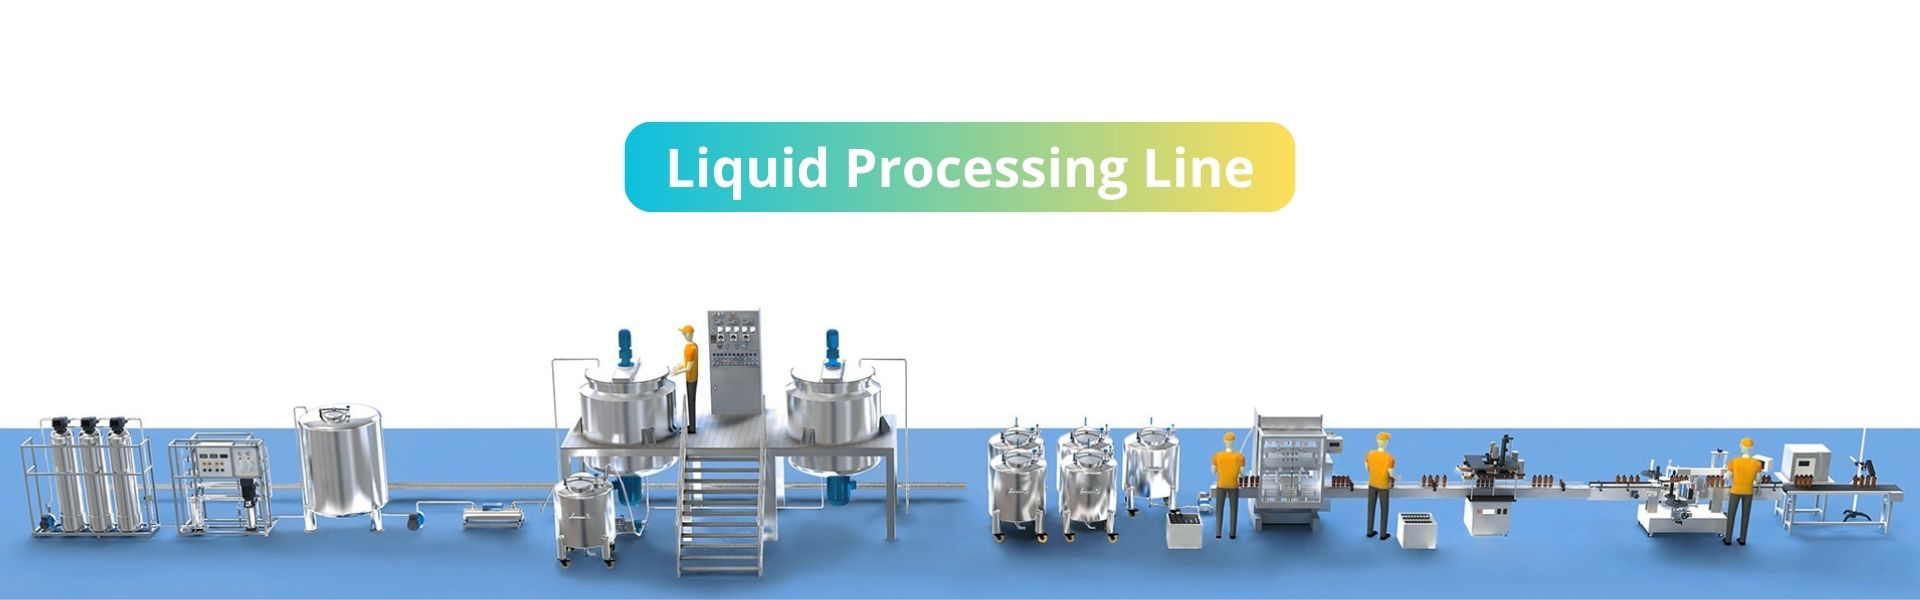 Liquid Processing Line